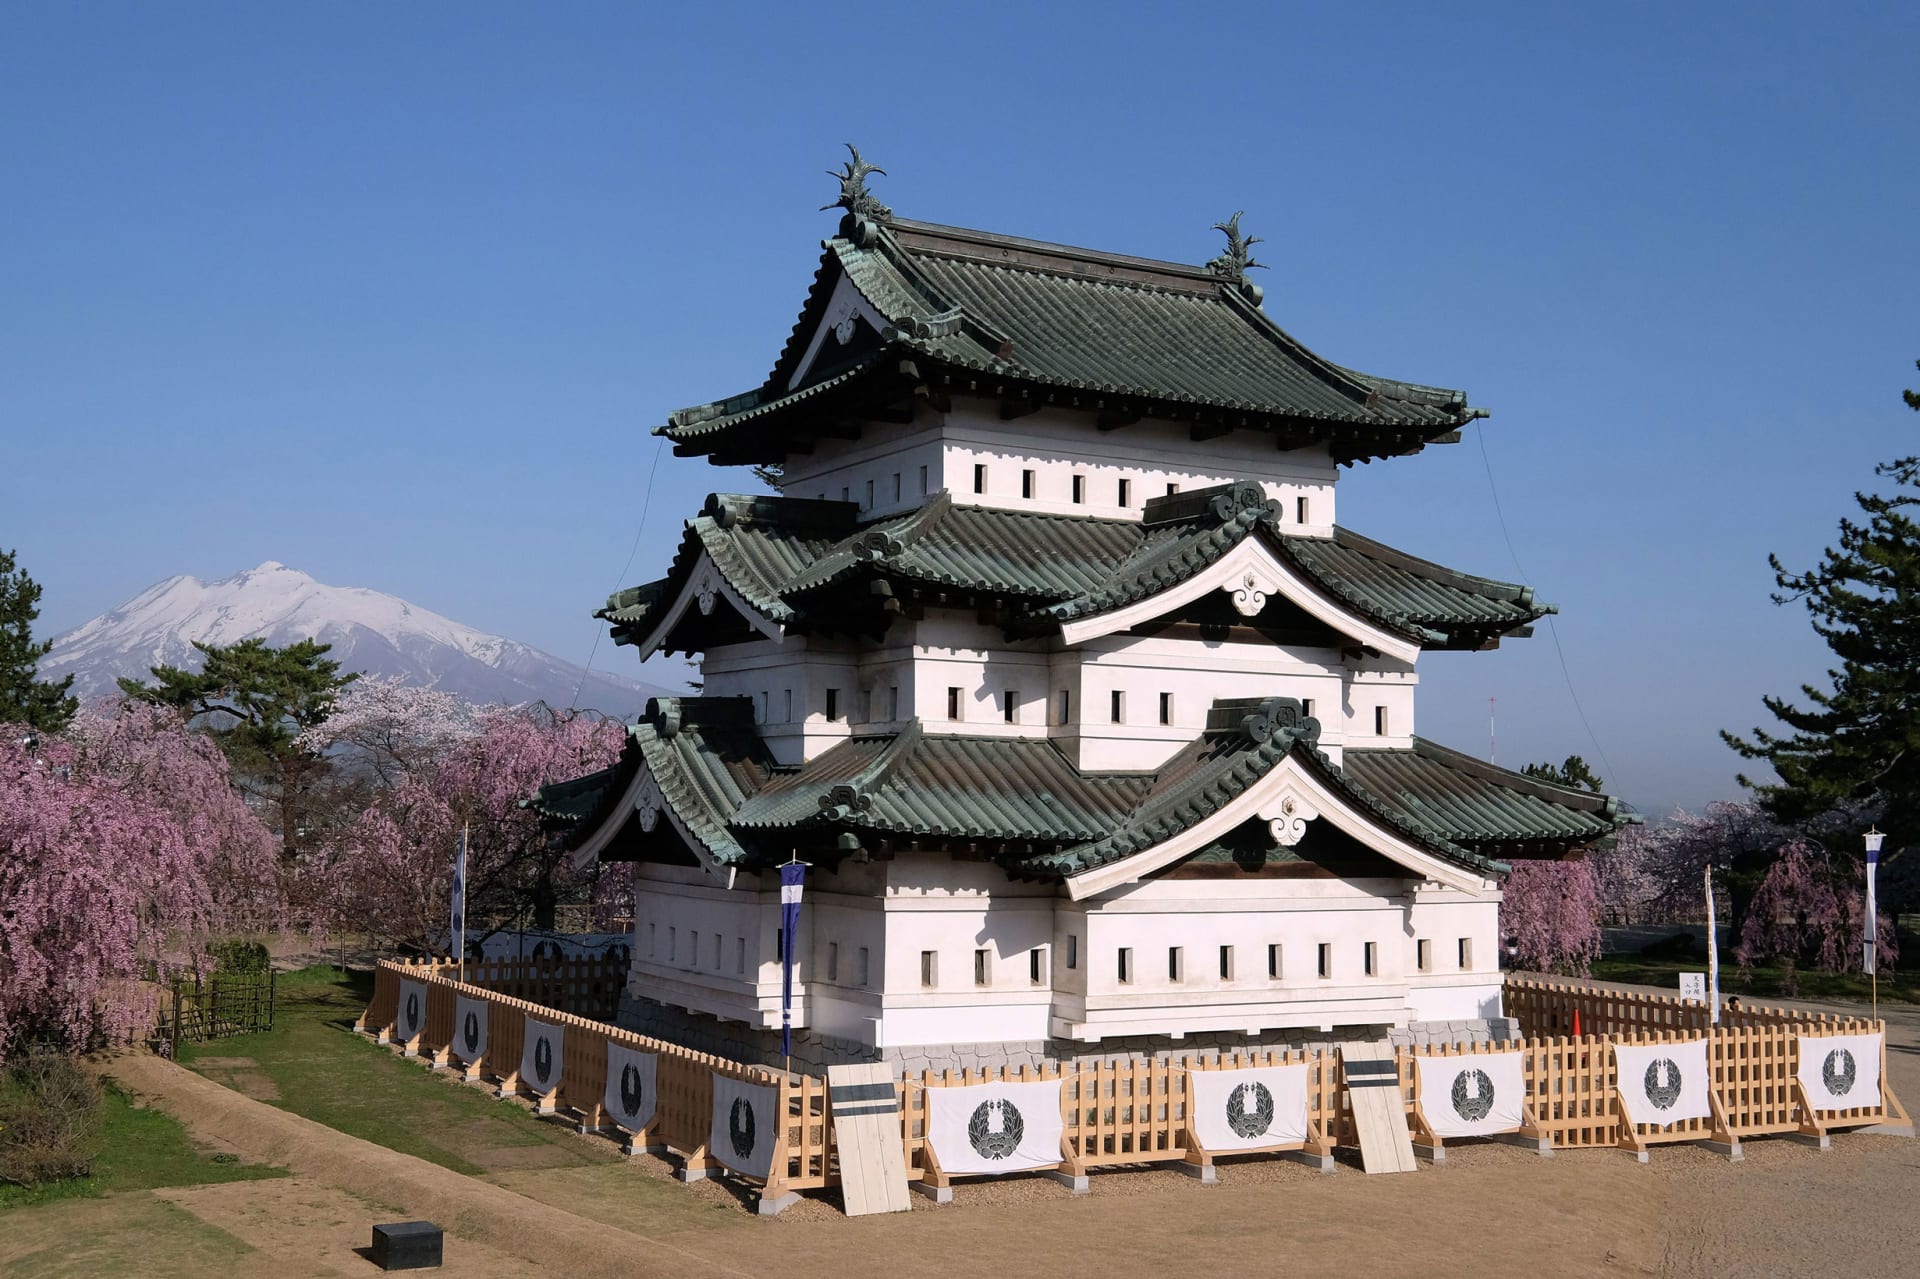 شاهدة على حقبة "الممالك المتحاربة"..إليك 10 من أفضل القلاع المتبقية في اليابان